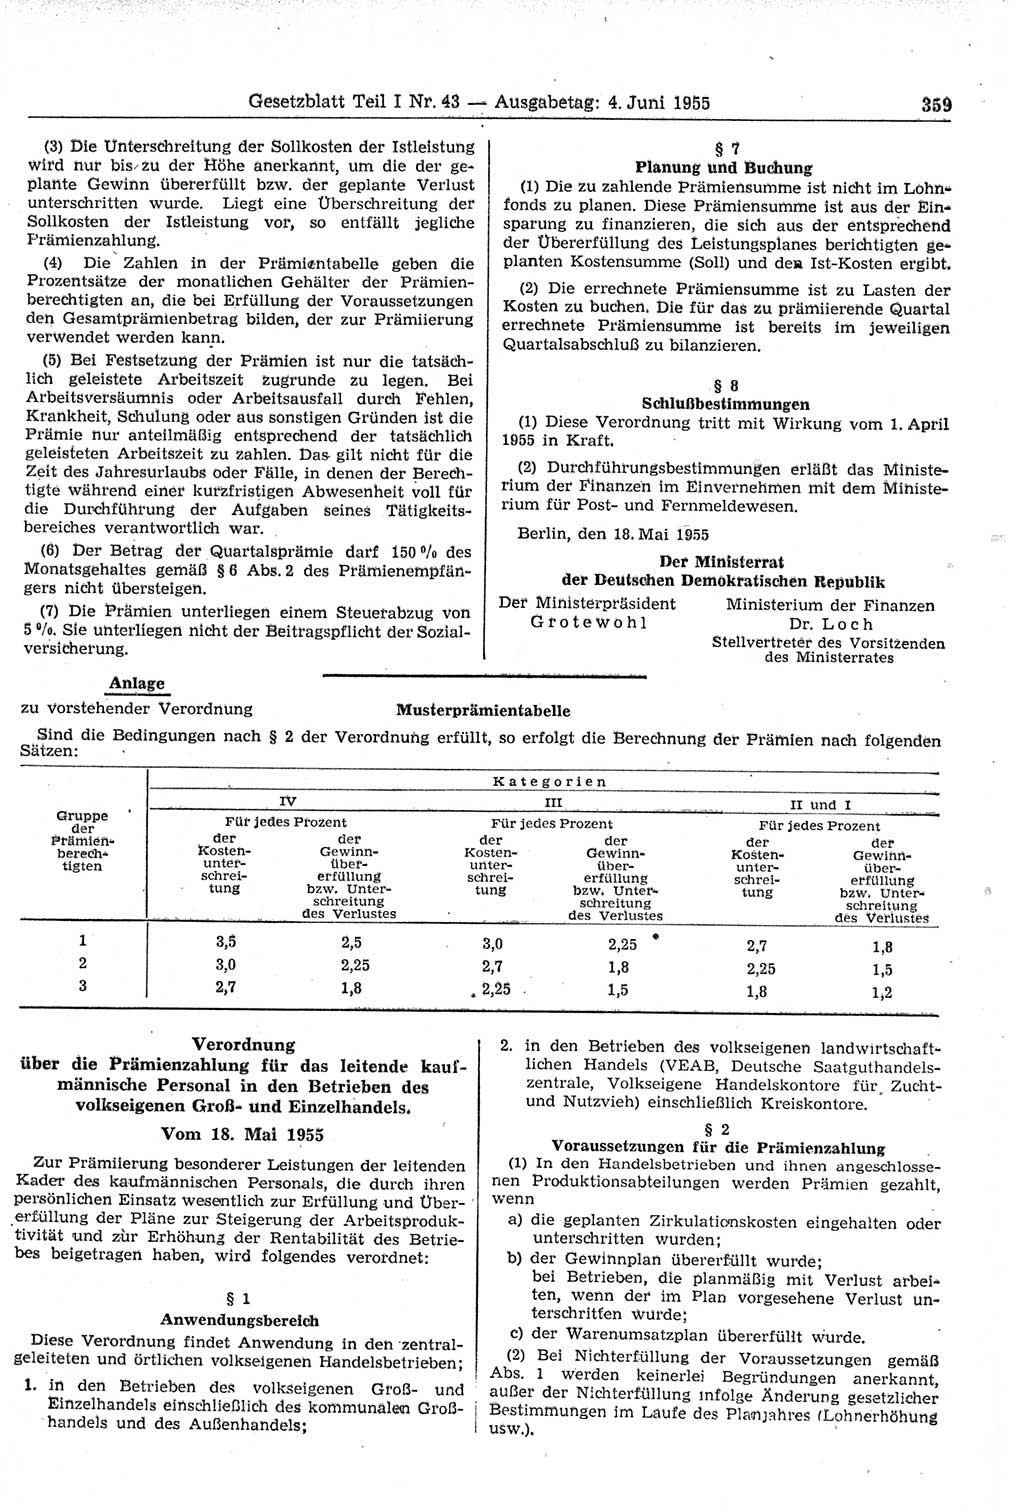 Gesetzblatt (GBl.) der Deutschen Demokratischen Republik (DDR) Teil Ⅰ 1955, Seite 359 (GBl. DDR Ⅰ 1955, S. 359)